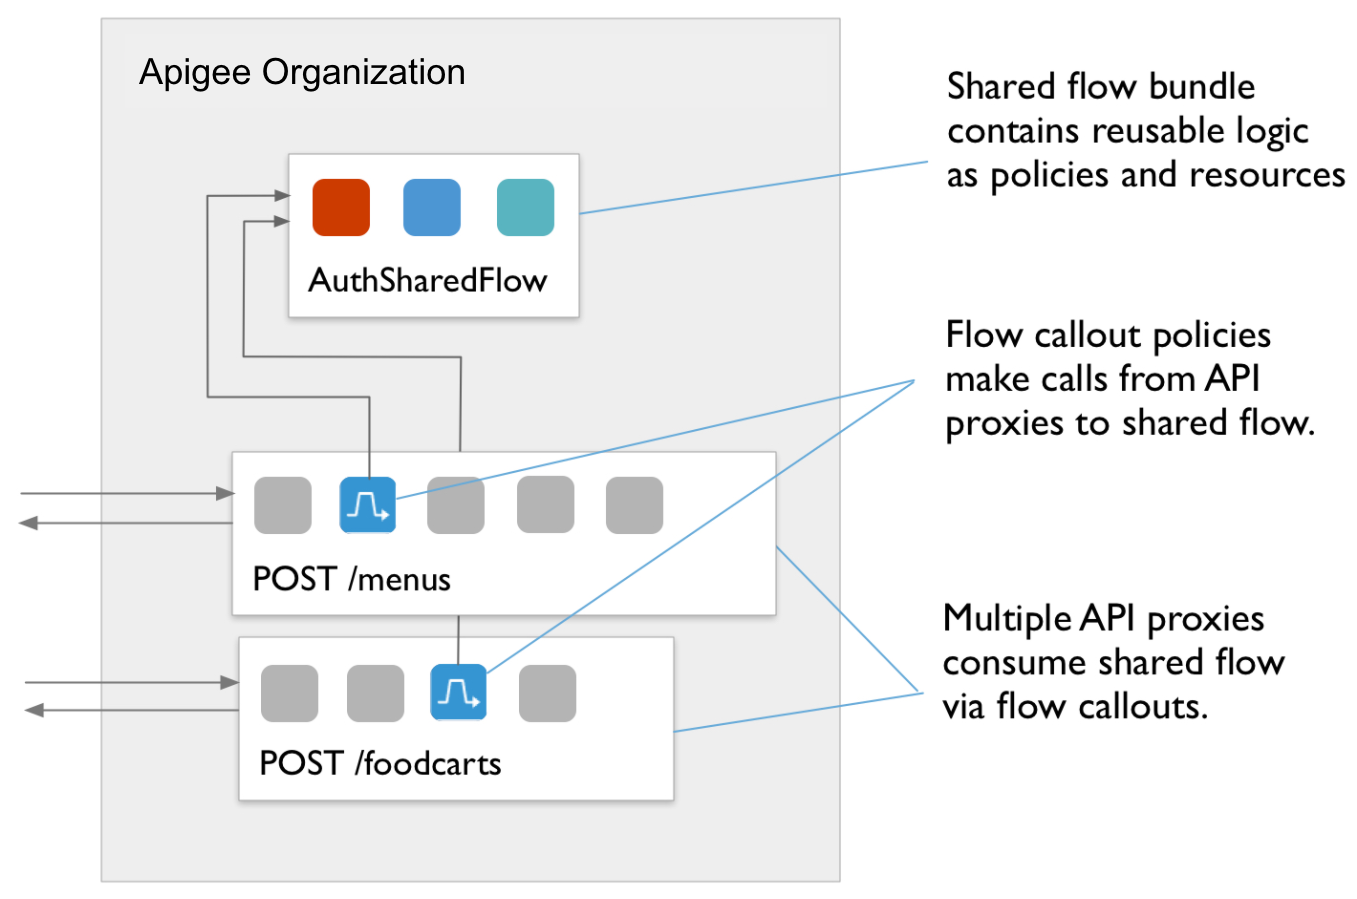 Diagrama de fluxo mostrando a política POST /foodcarts para a política POST /menus do AuthSharedFlow.
          Texto da chamada:
          a) vários proxies de API consomem o fluxo compartilhado via FlowCallouts.
          b) As políticas FlowCallout fazem chamadas de proxies de API para fluxo compartilhado.
          c) Um pacote de fluxo compartilhado contém lógica reutilizável como políticas e recursos.